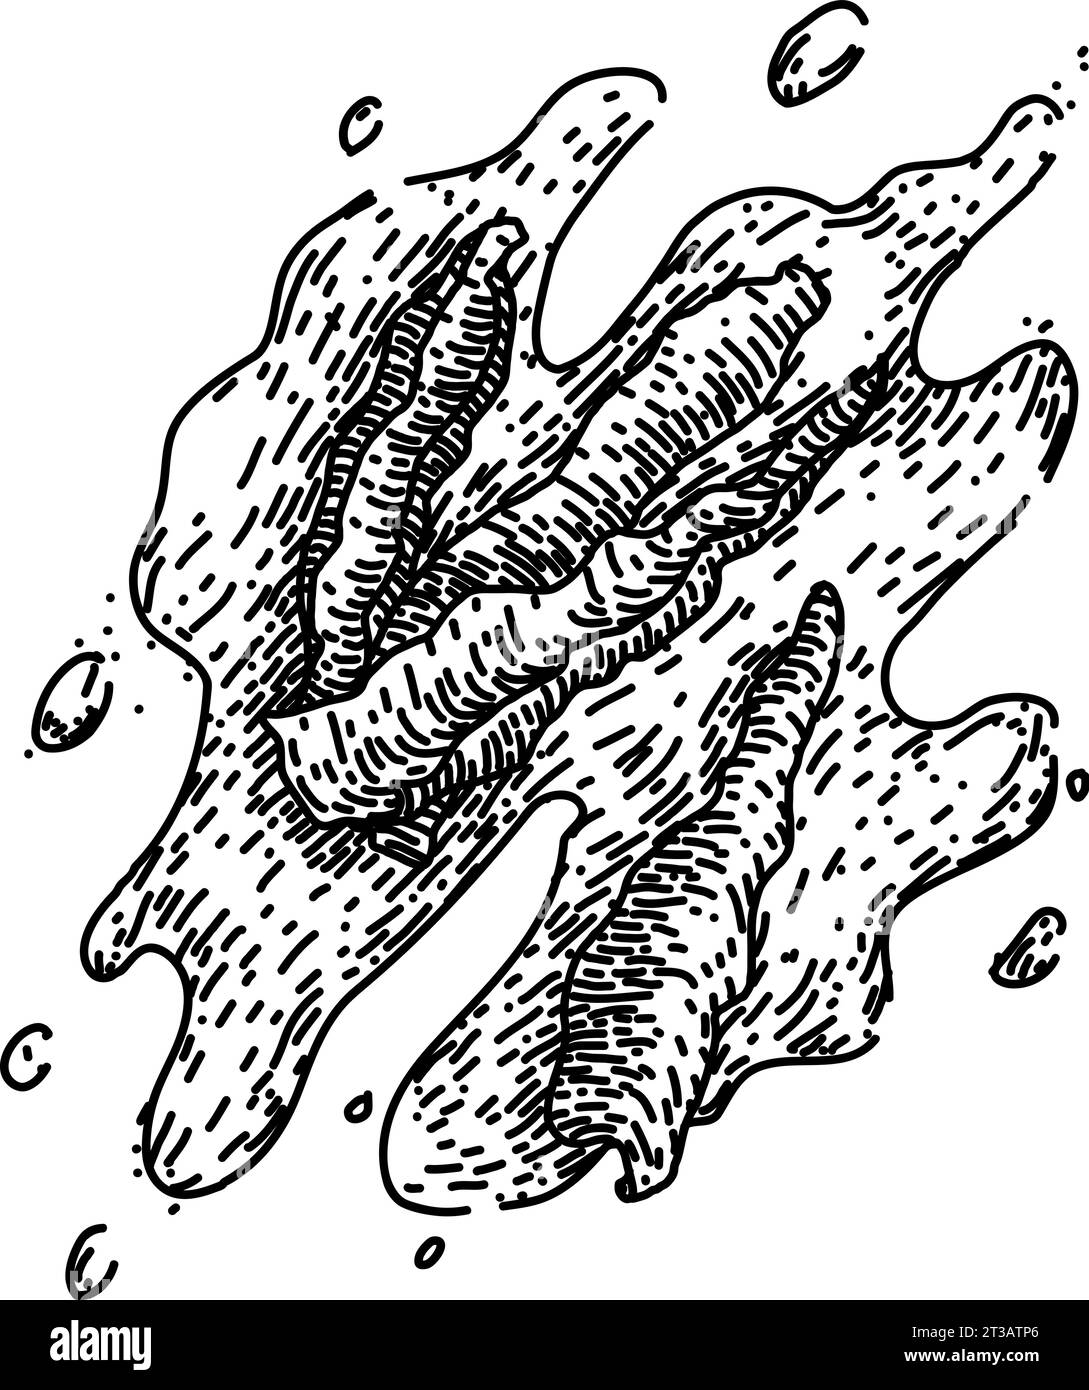 vecteur dessiné à la main d'esquisse de paprika d'ingrédient Illustration de Vecteur